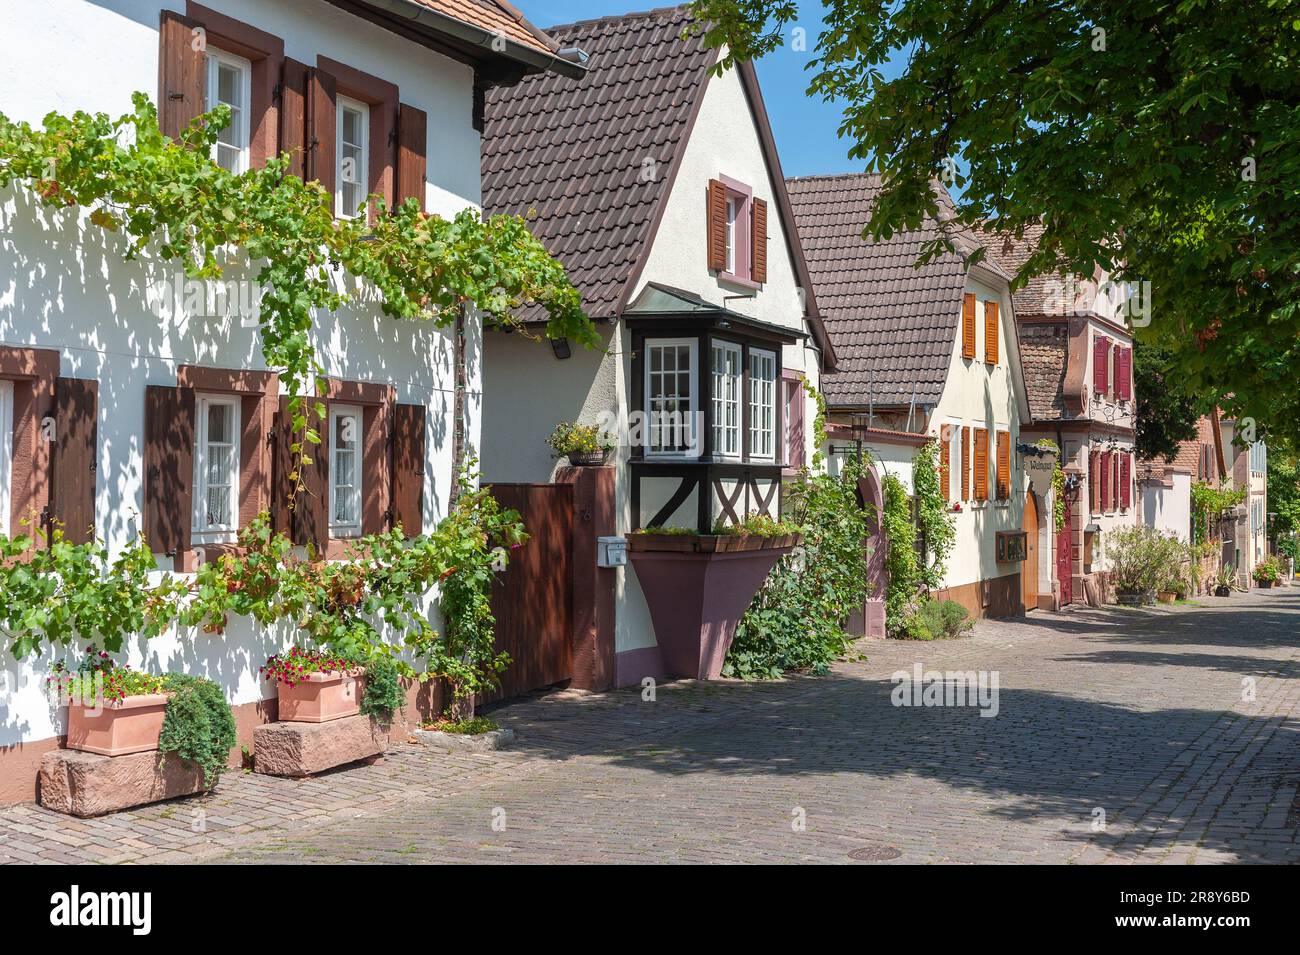 Typische Häuser in der historischen Theresienstraße, Rhodt unter Rietburg, Pfalz, Rheinland-Pfalz, Deutschland, Europa Stockfoto